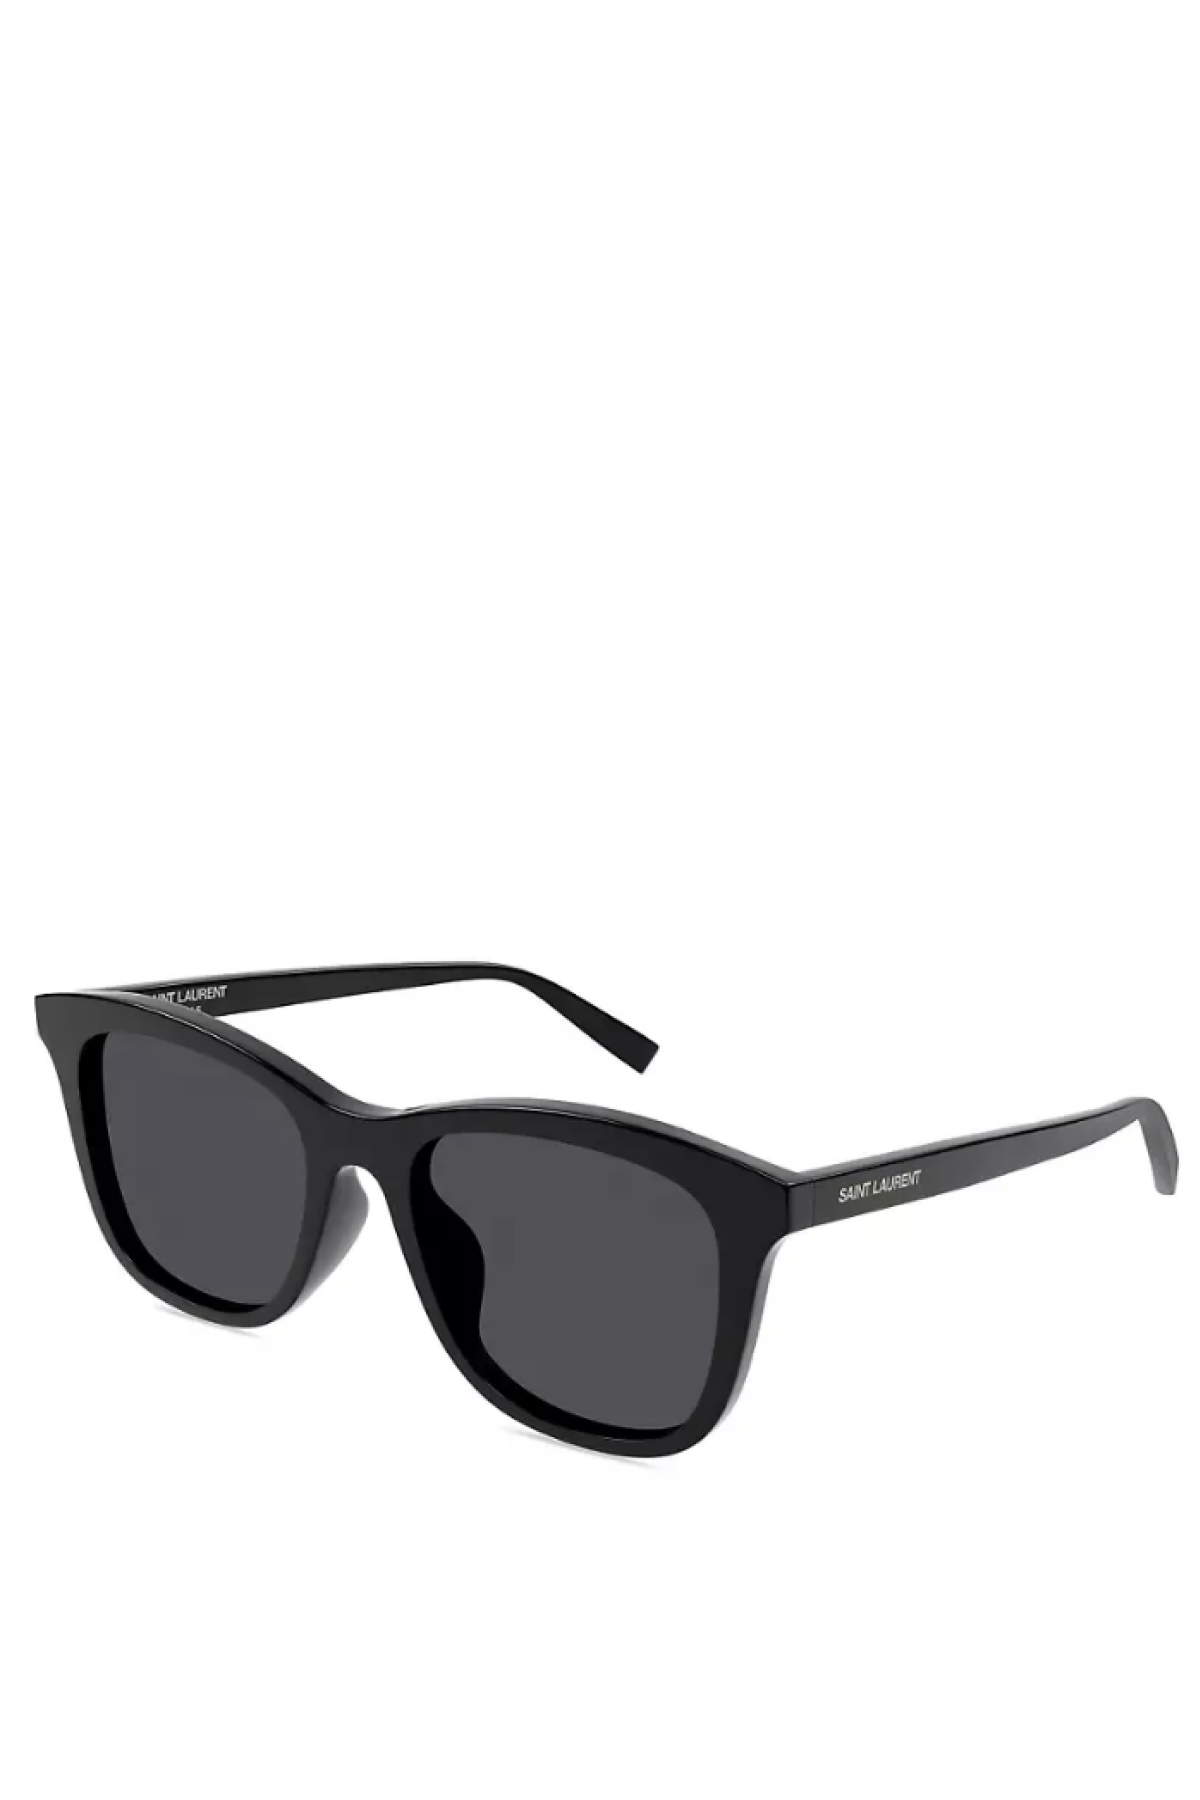 Essential 53mm Square Sunglasses